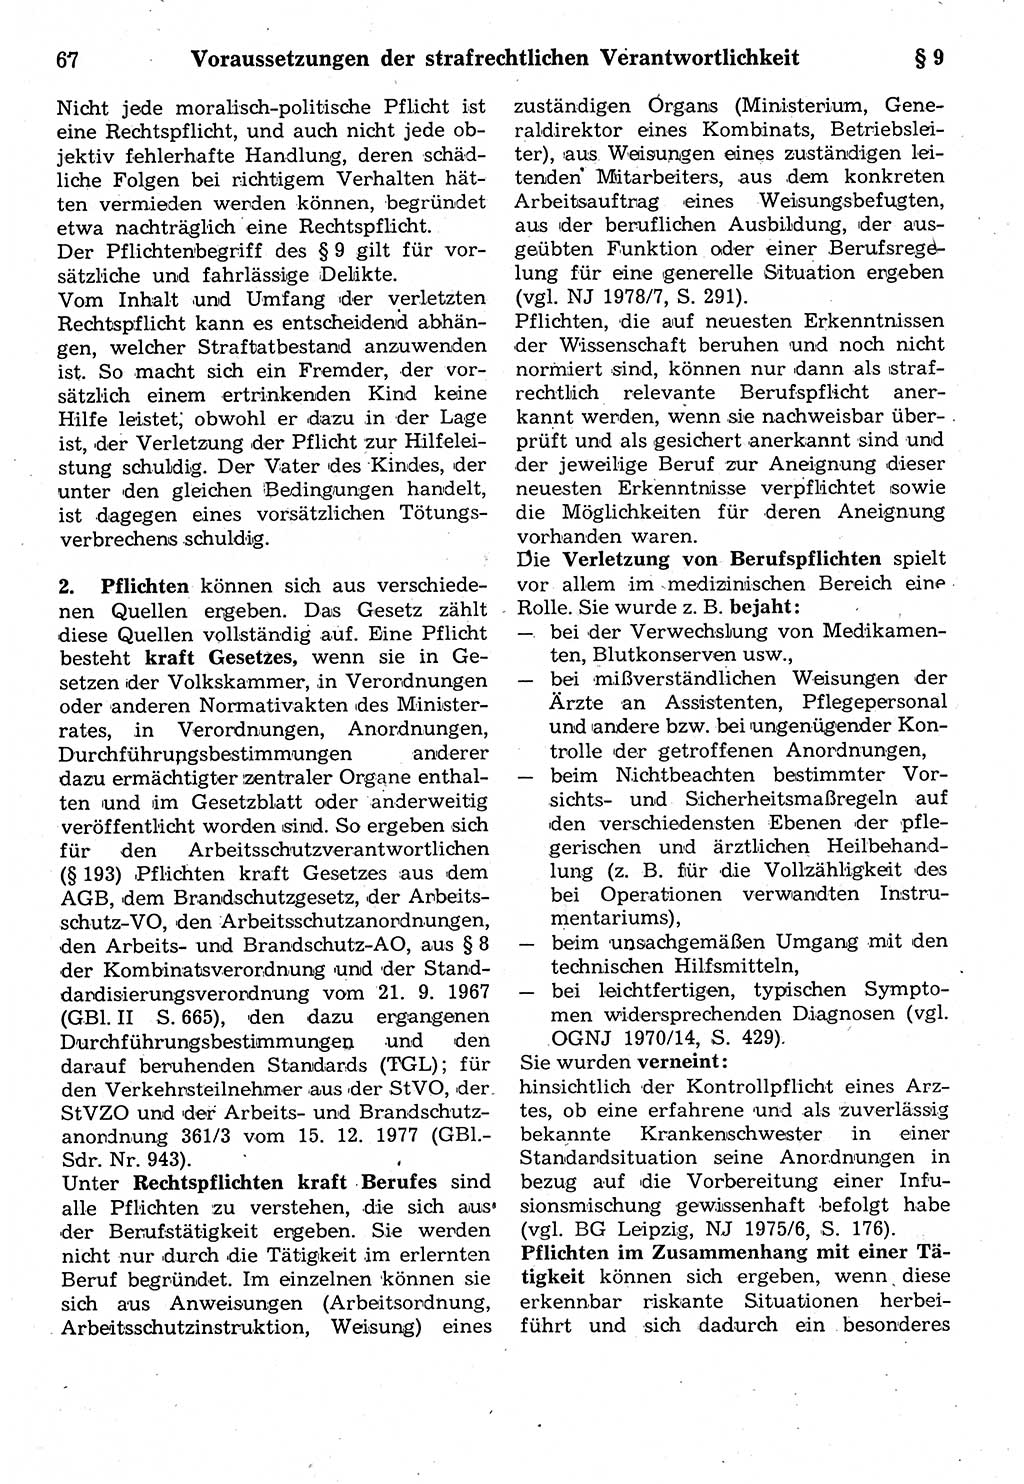 Strafrecht der Deutschen Demokratischen Republik (DDR), Kommentar zum Strafgesetzbuch (StGB) 1987, Seite 67 (Strafr. DDR Komm. StGB 1987, S. 67)